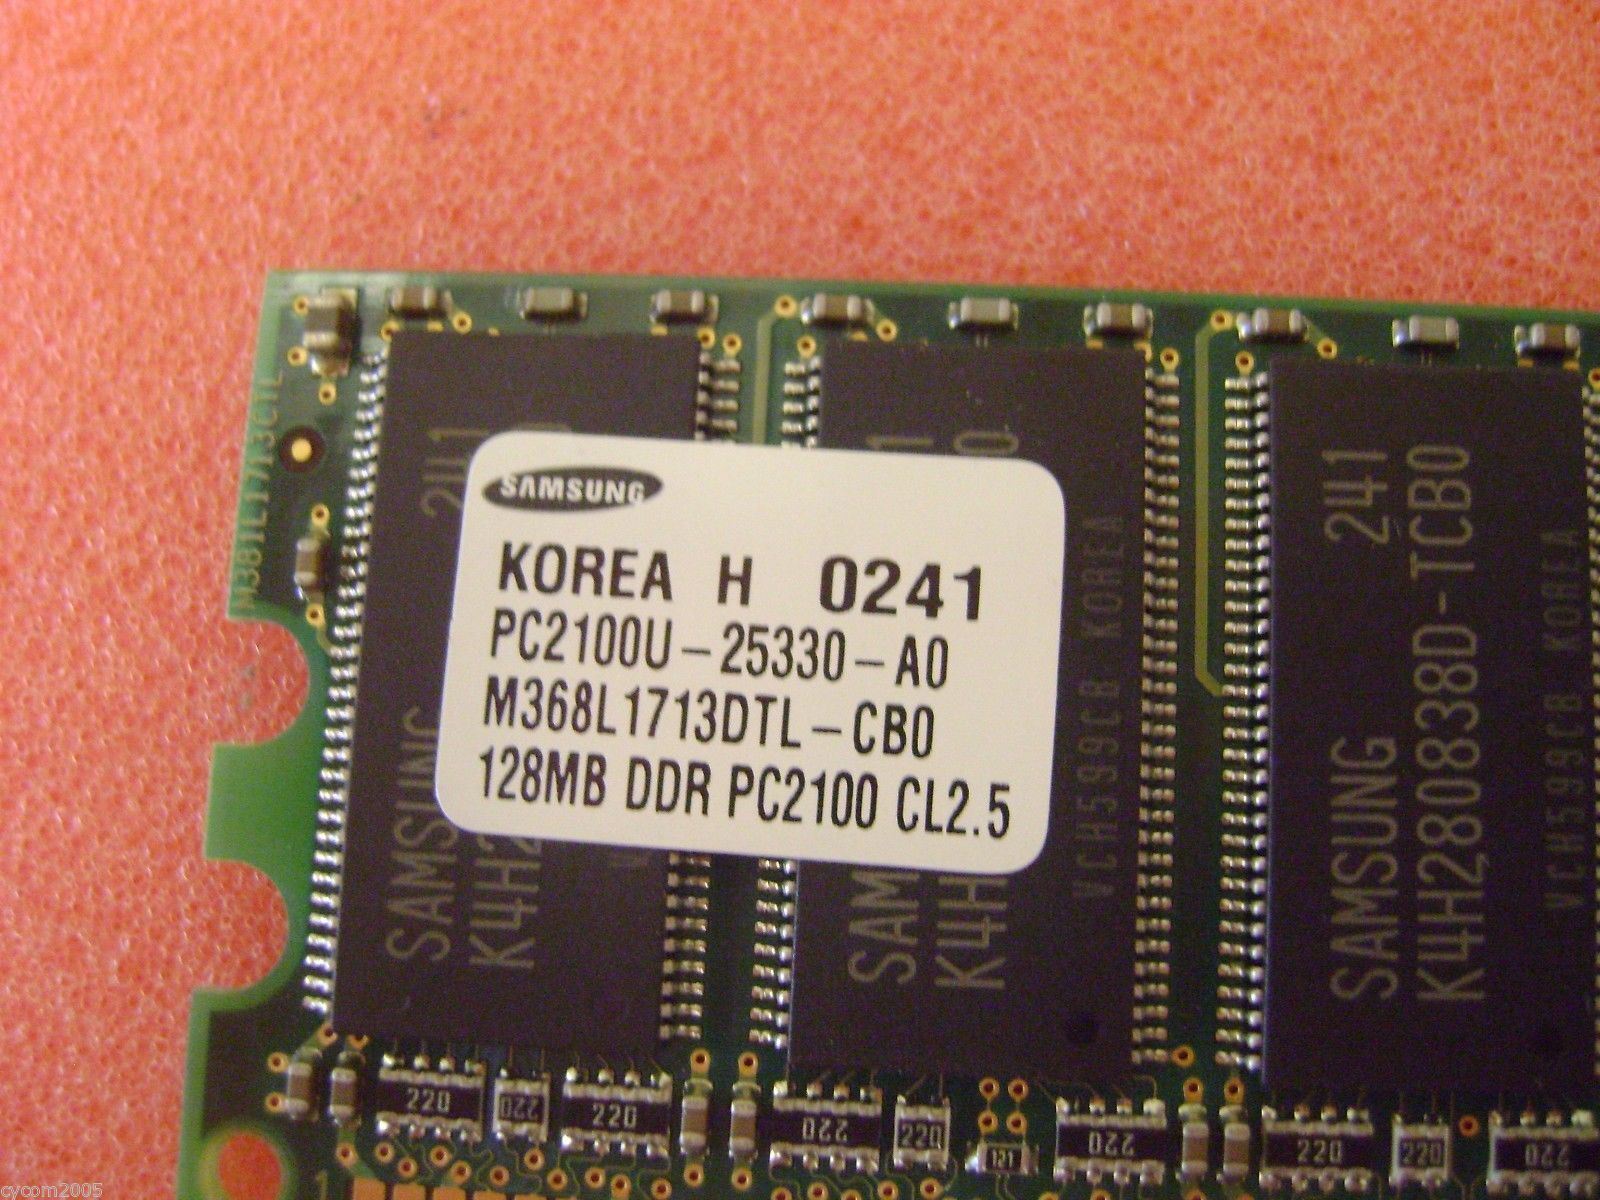 Samsung M368L1713DTL-CB0 128MB DDR PC2100 184pin from Dell Optiplex GX260